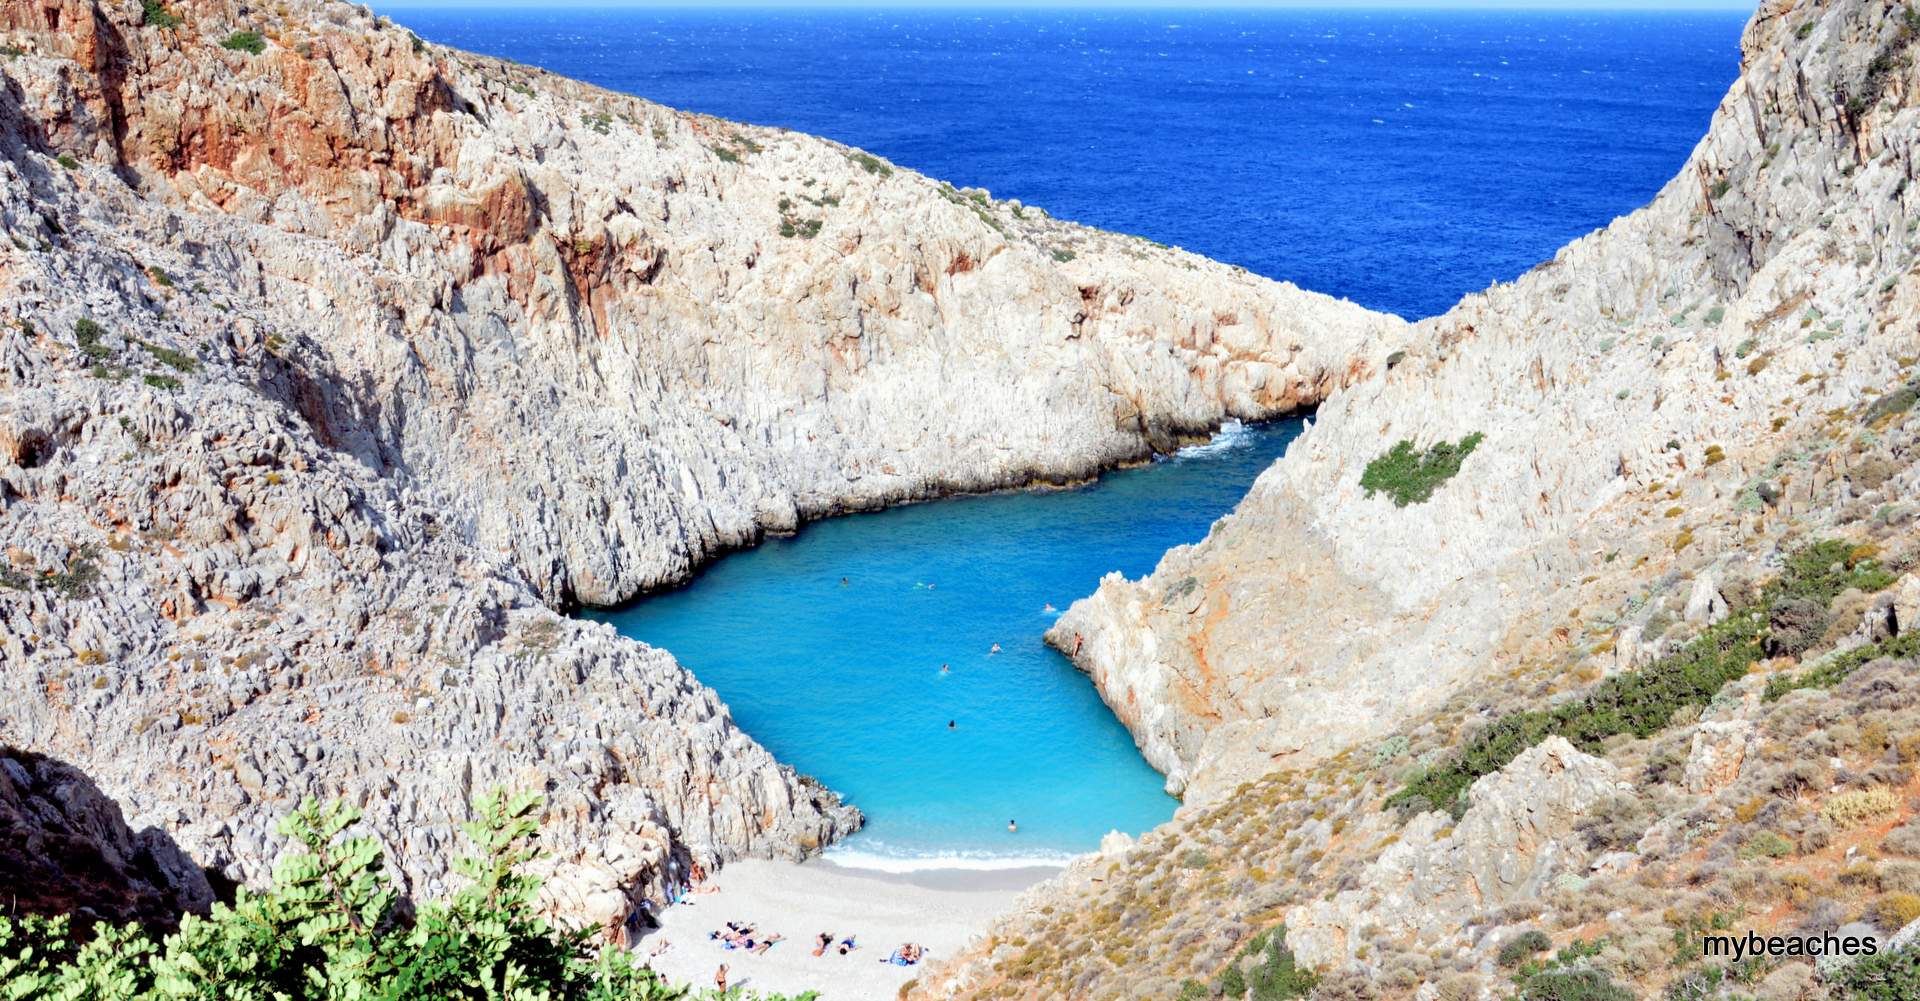 Seitan Limania or Agios Stefanos beach, Hania, Crete